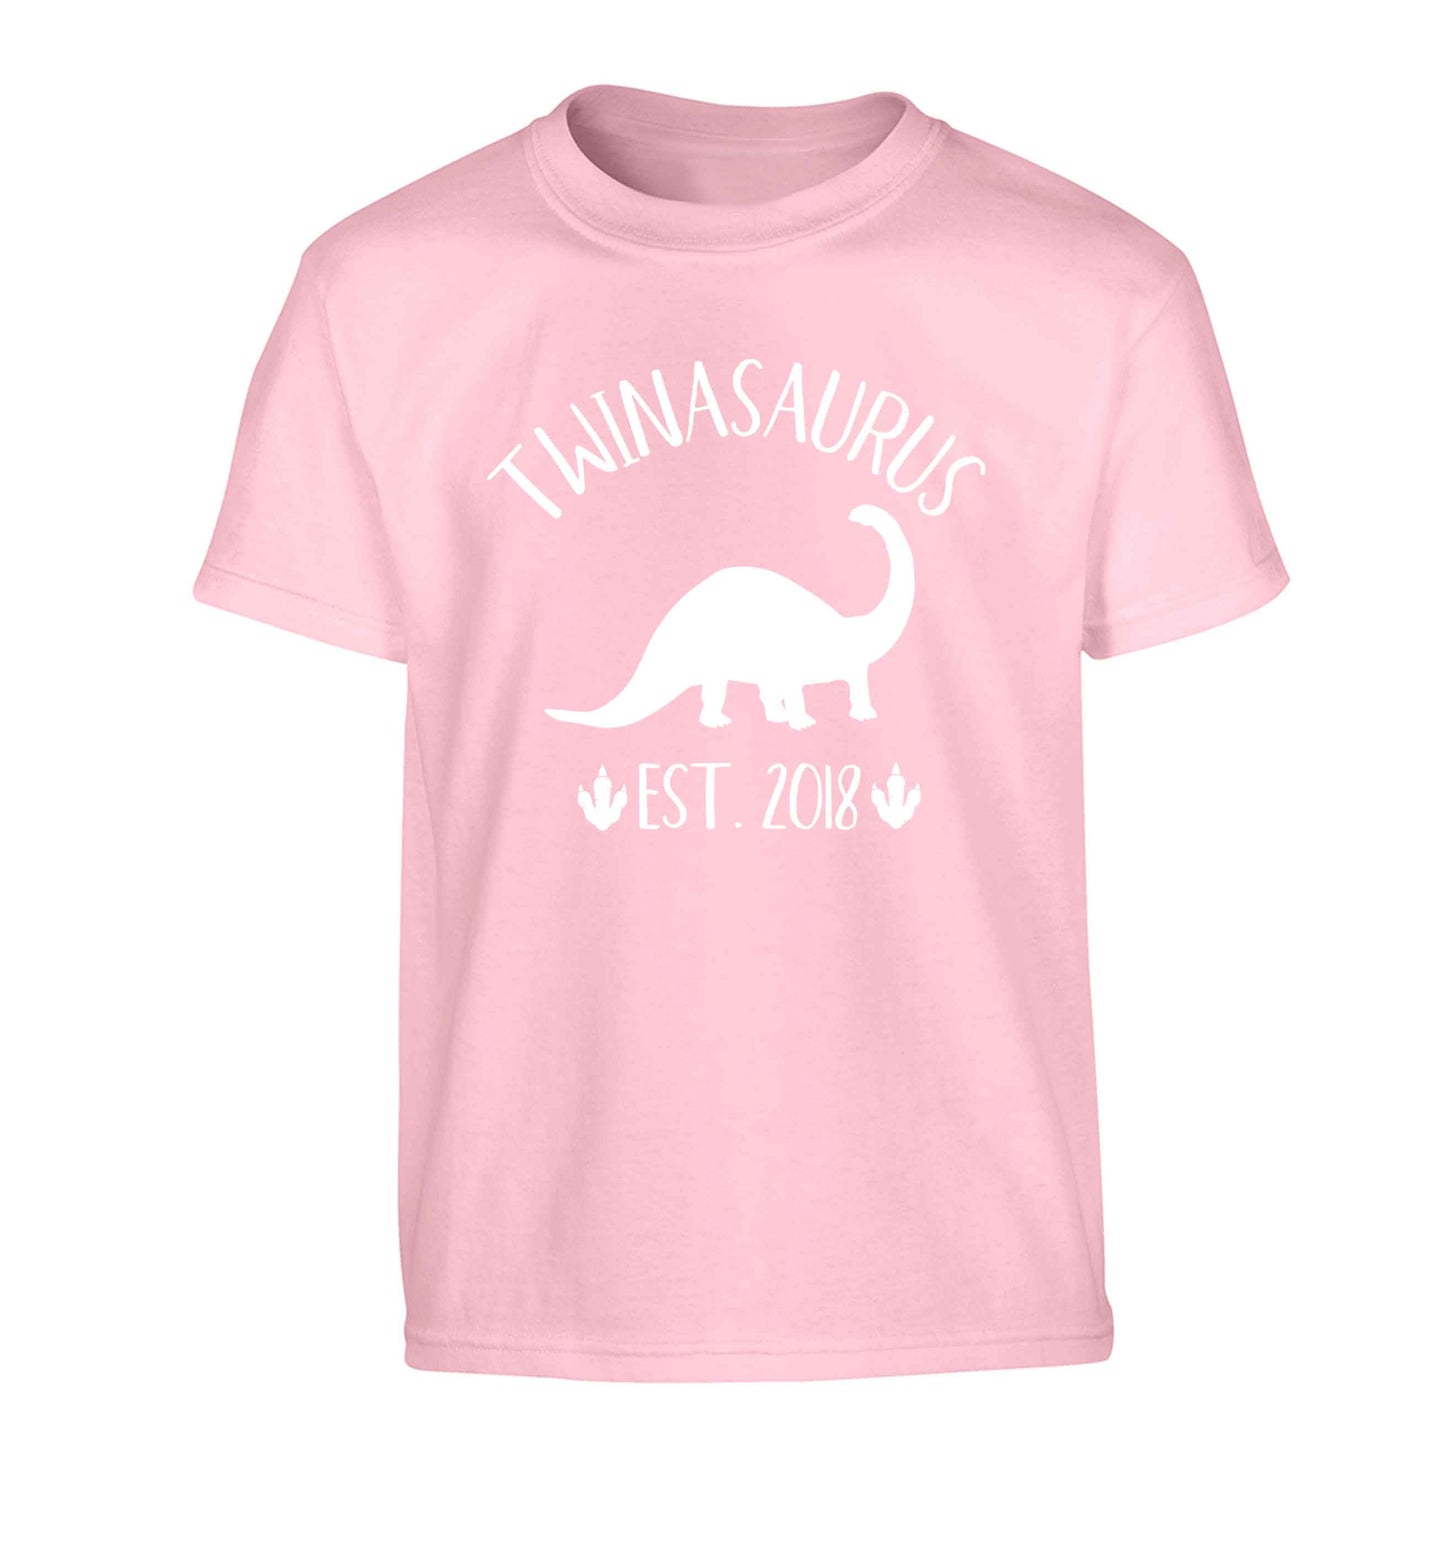 Personalised twinasaurus since (custom date) Children's light pink Tshirt 12-13 Years